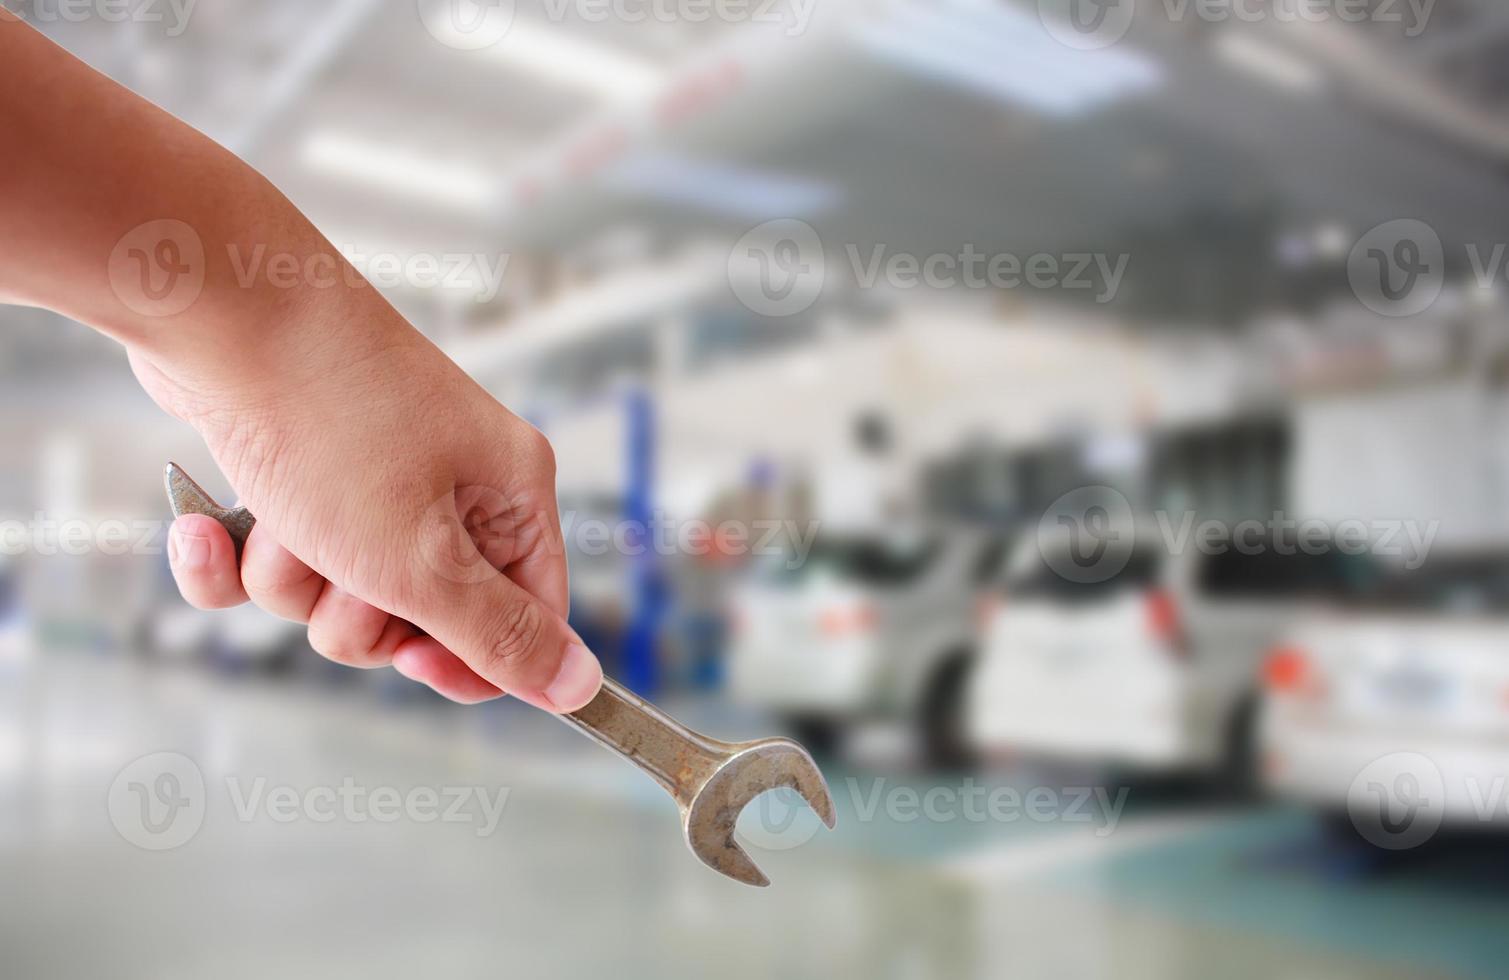 técnico sosteniendo llave con de centro de servicio de reparación de automóviles 7199018 Foto de stock en Vecteezy